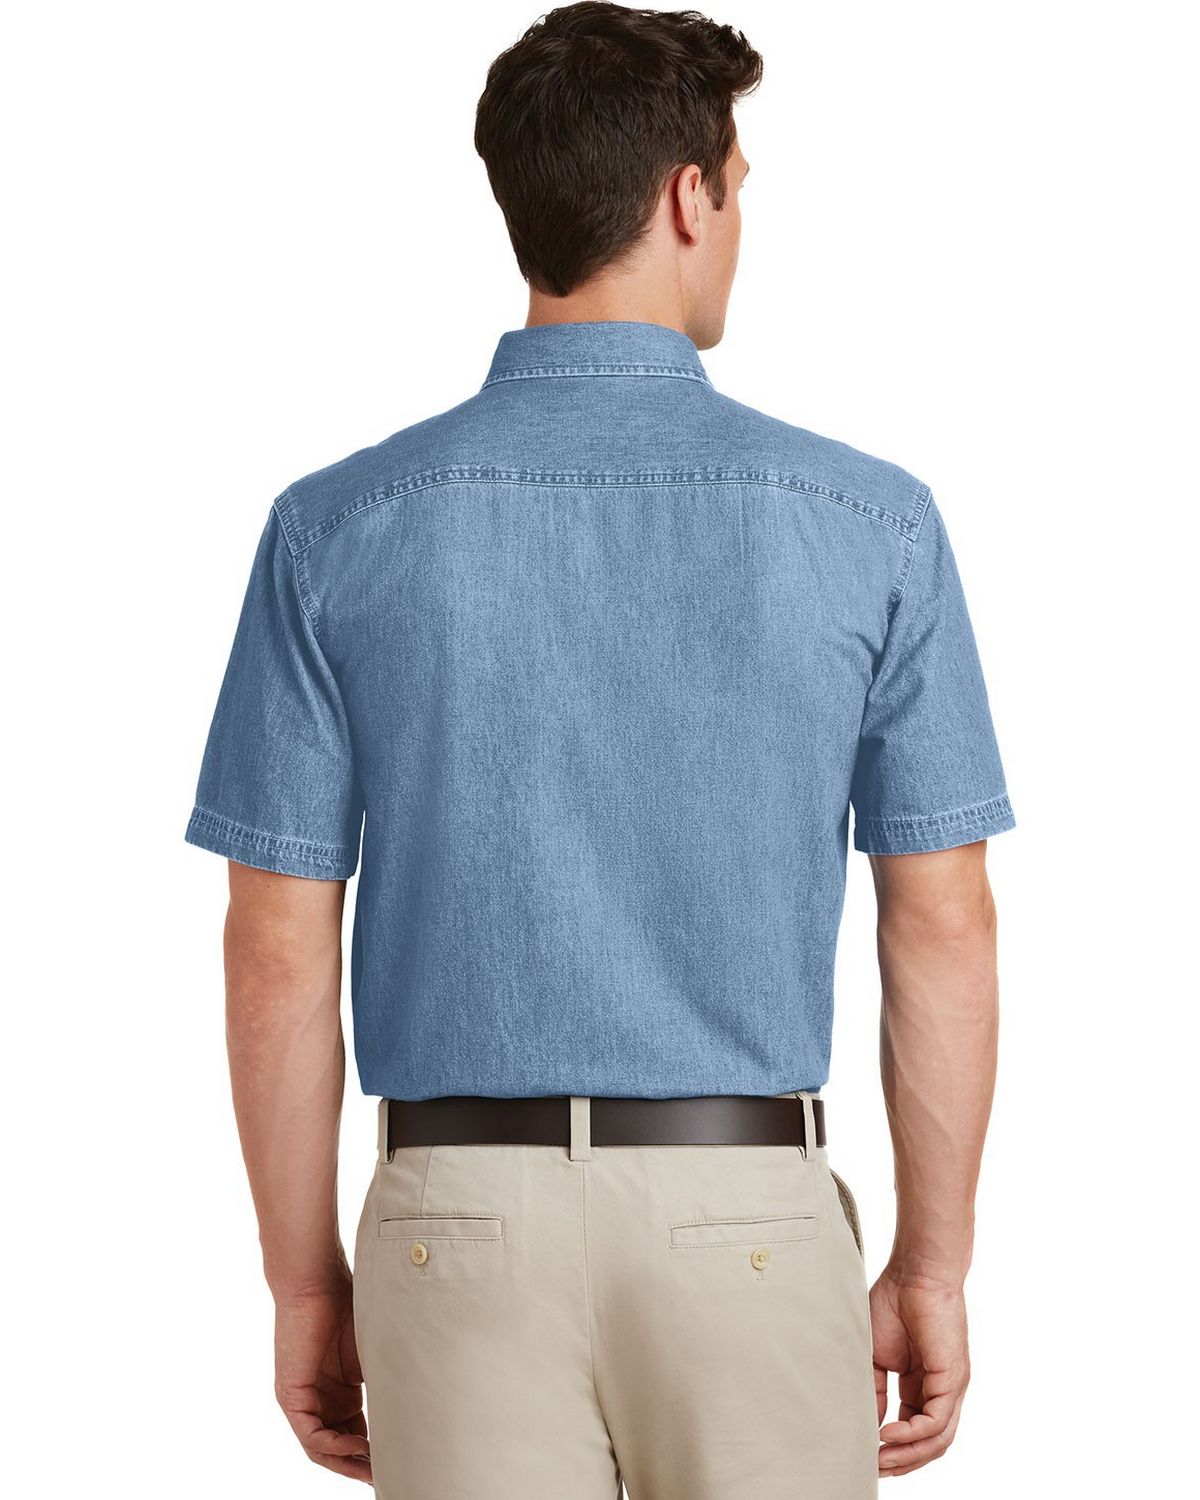 Port & Company SP11 Short Sleeve Value Denim Shirt - ApparelnBags.com